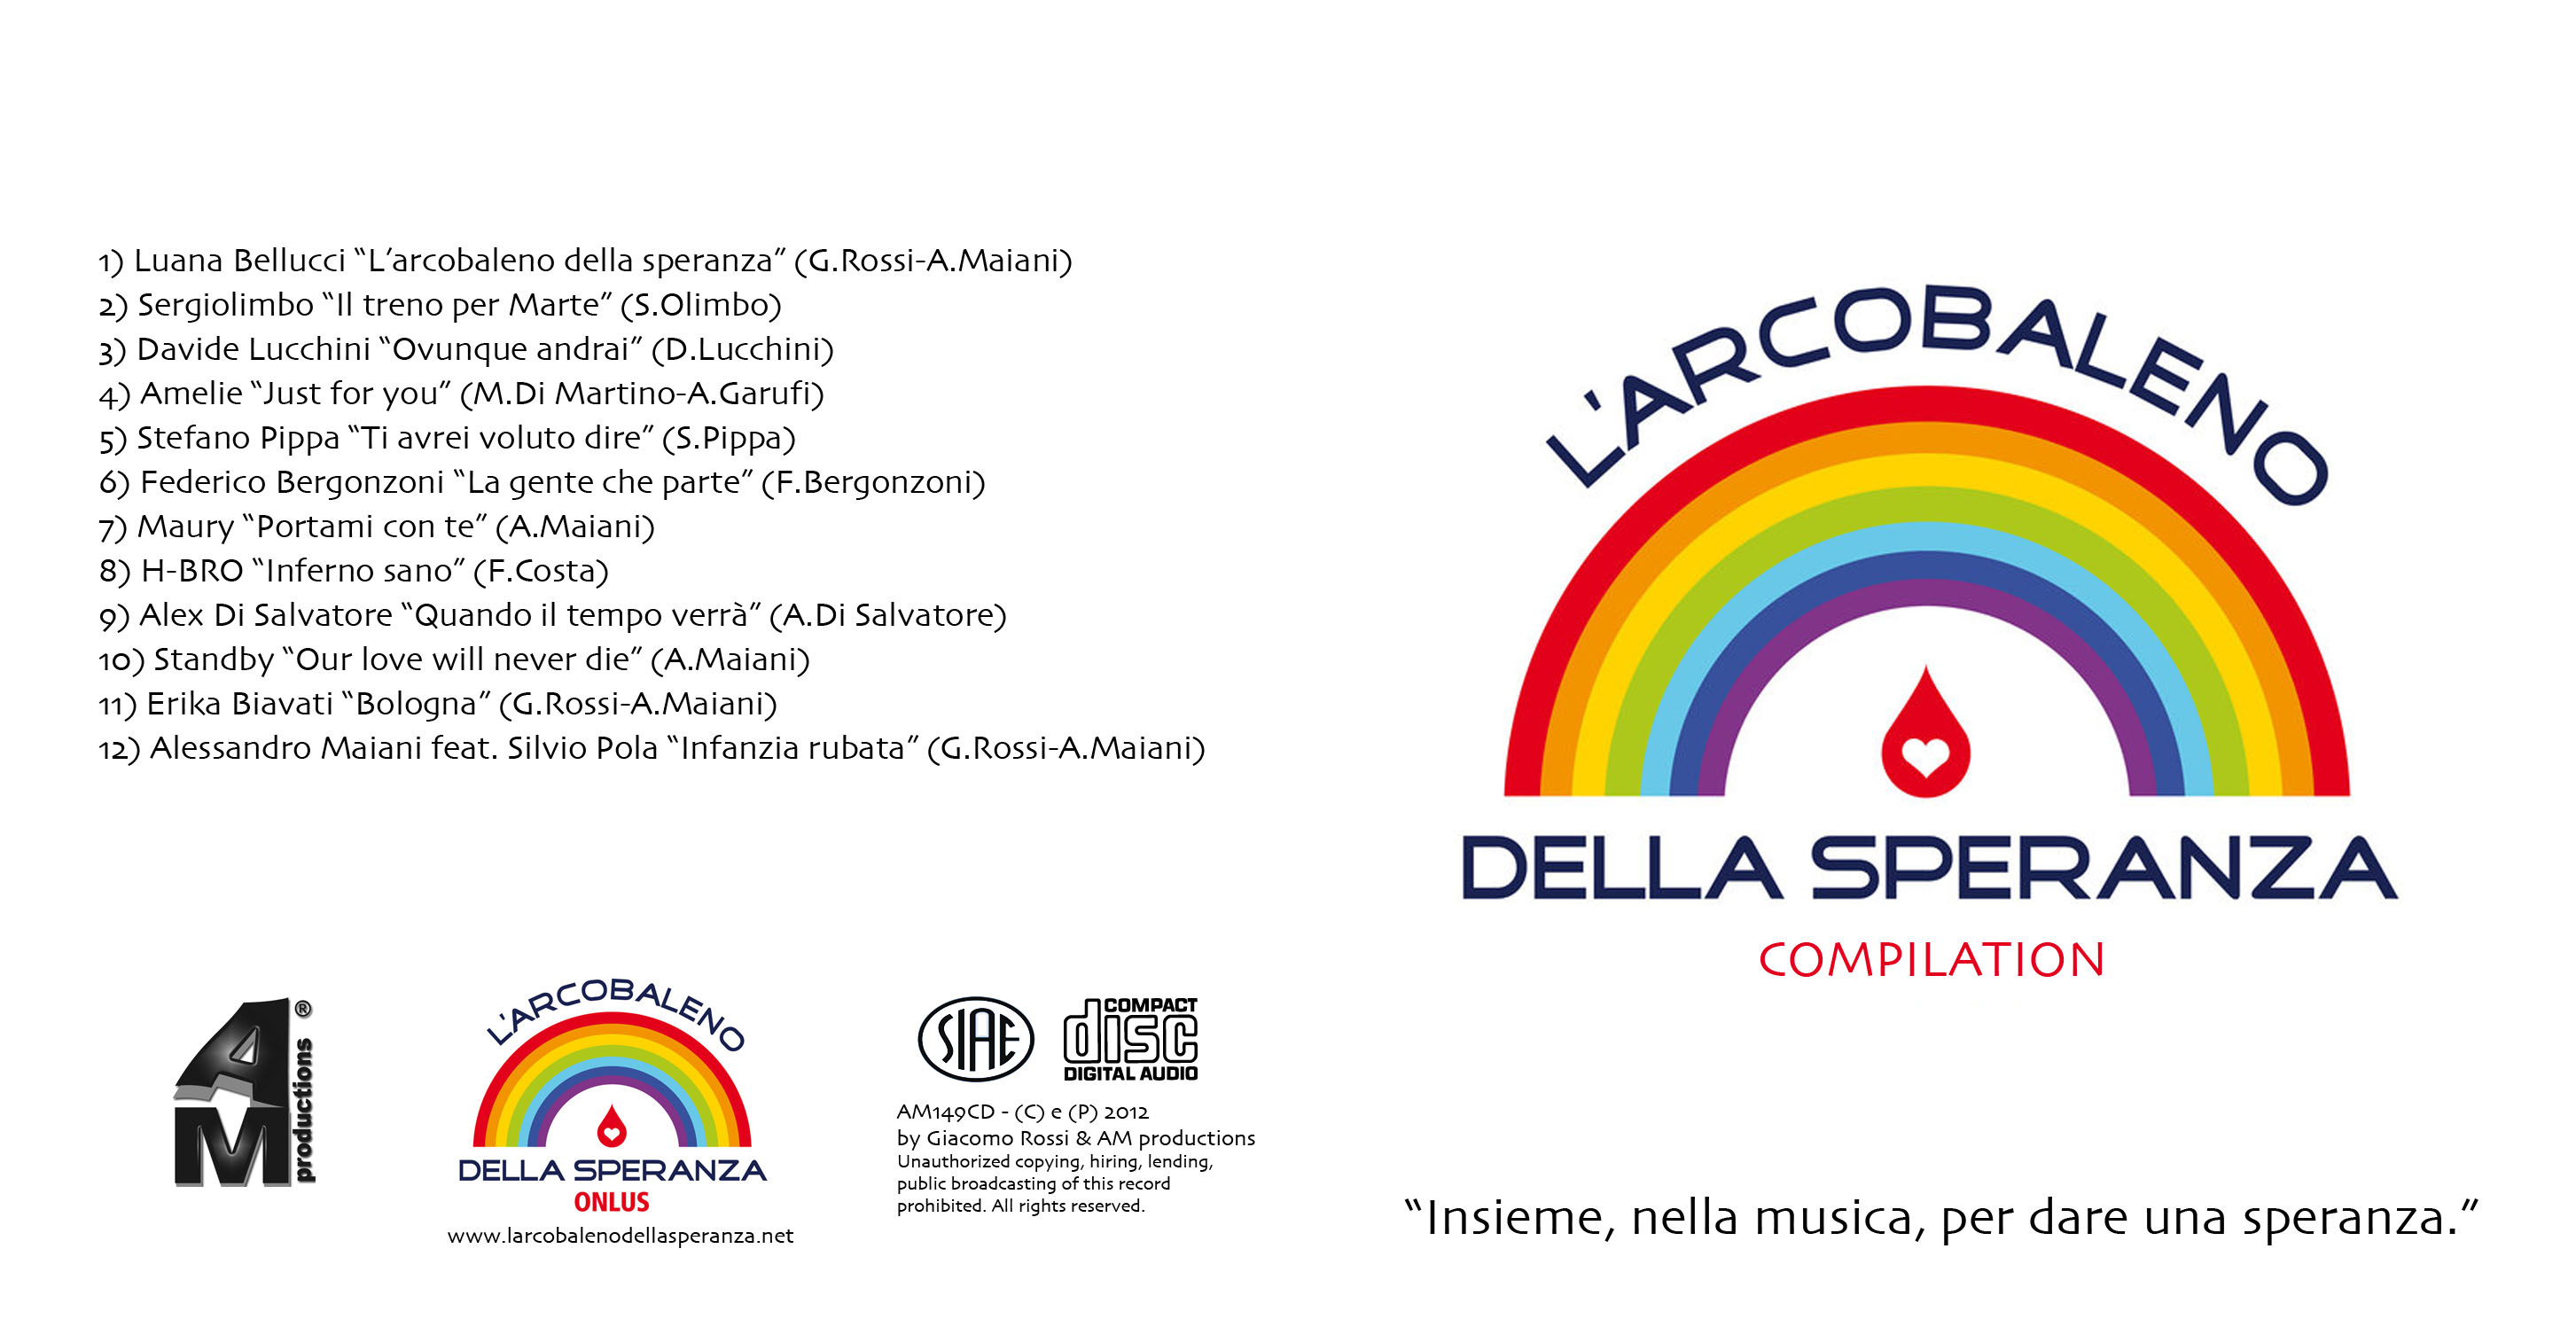 arcobaleno_della_speranza